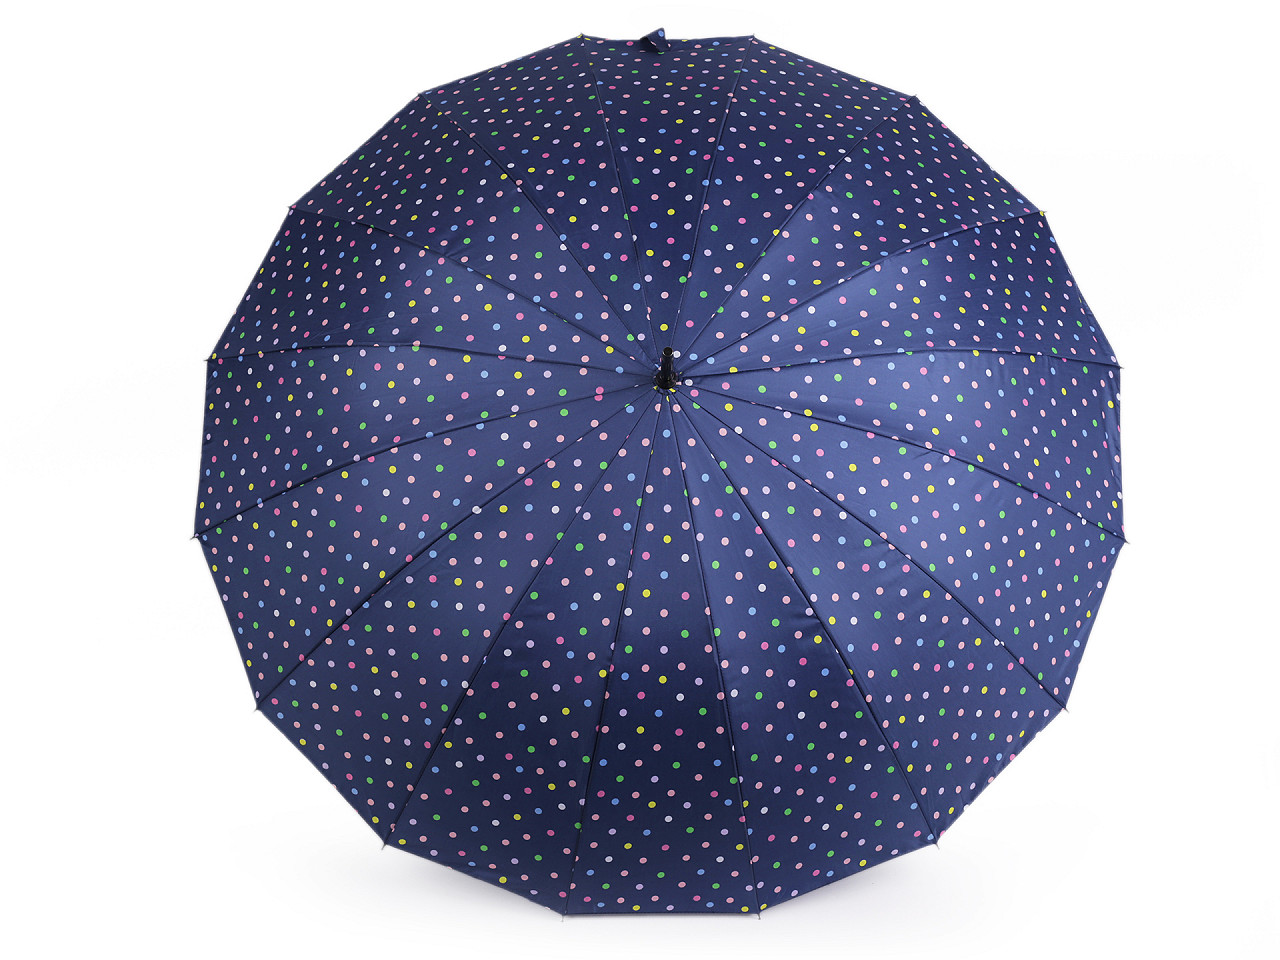 Großer Familienregenschirm mit Punkten, dunkelblau, 1 Stk.